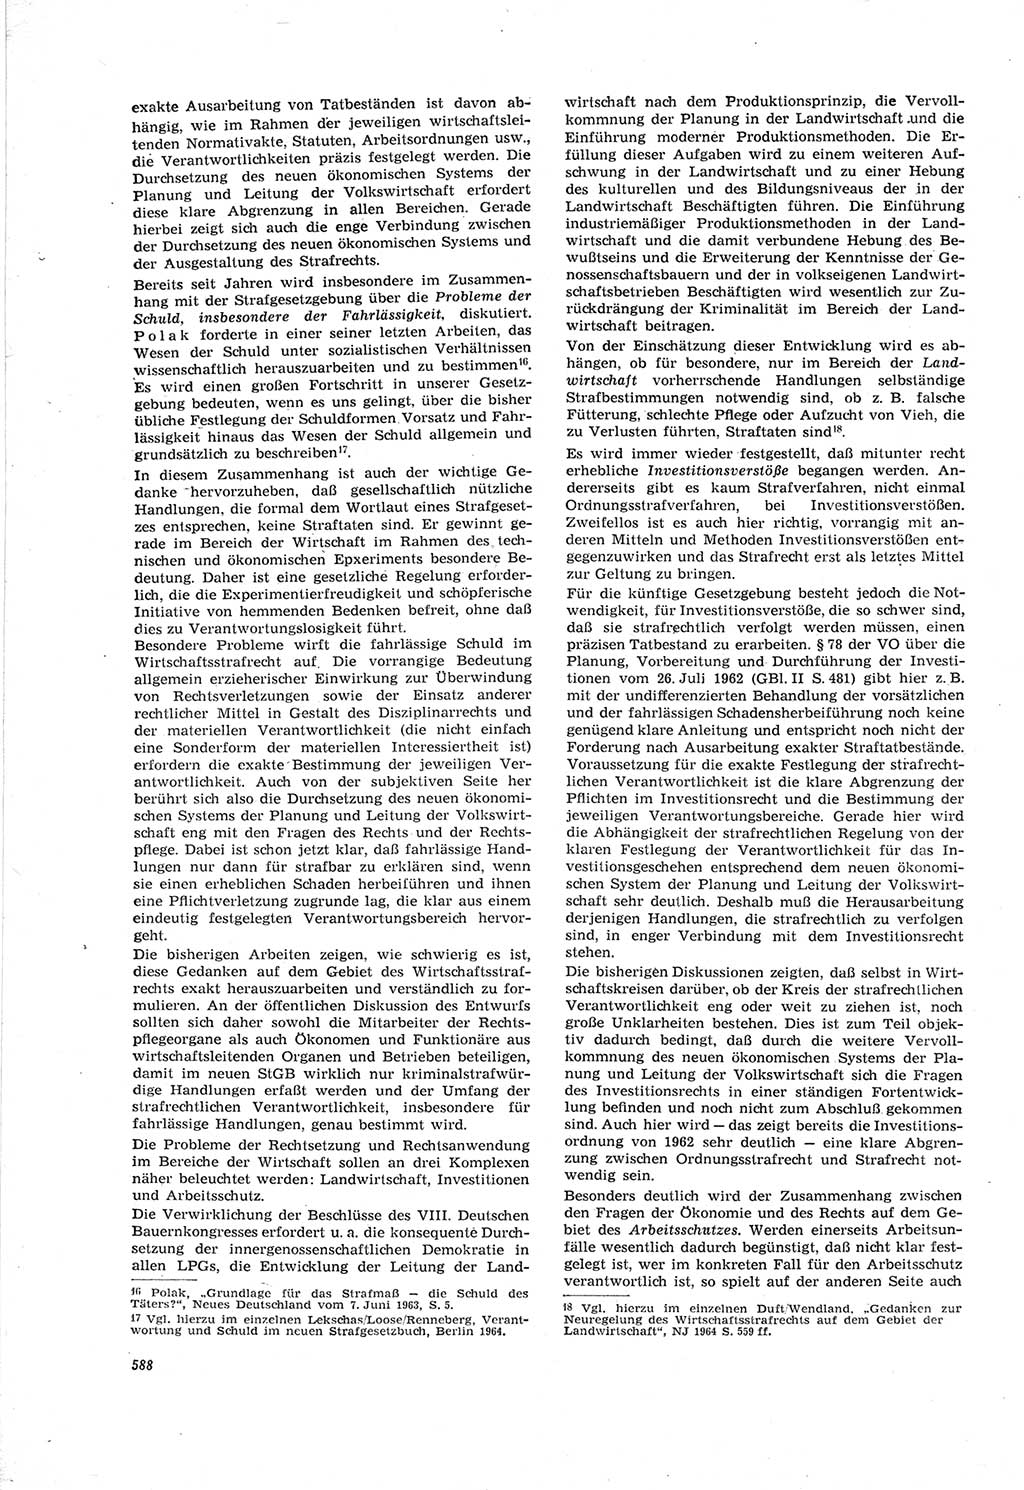 Neue Justiz (NJ), Zeitschrift für Recht und Rechtswissenschaft [Deutsche Demokratische Republik (DDR)], 18. Jahrgang 1964, Seite 588 (NJ DDR 1964, S. 588)